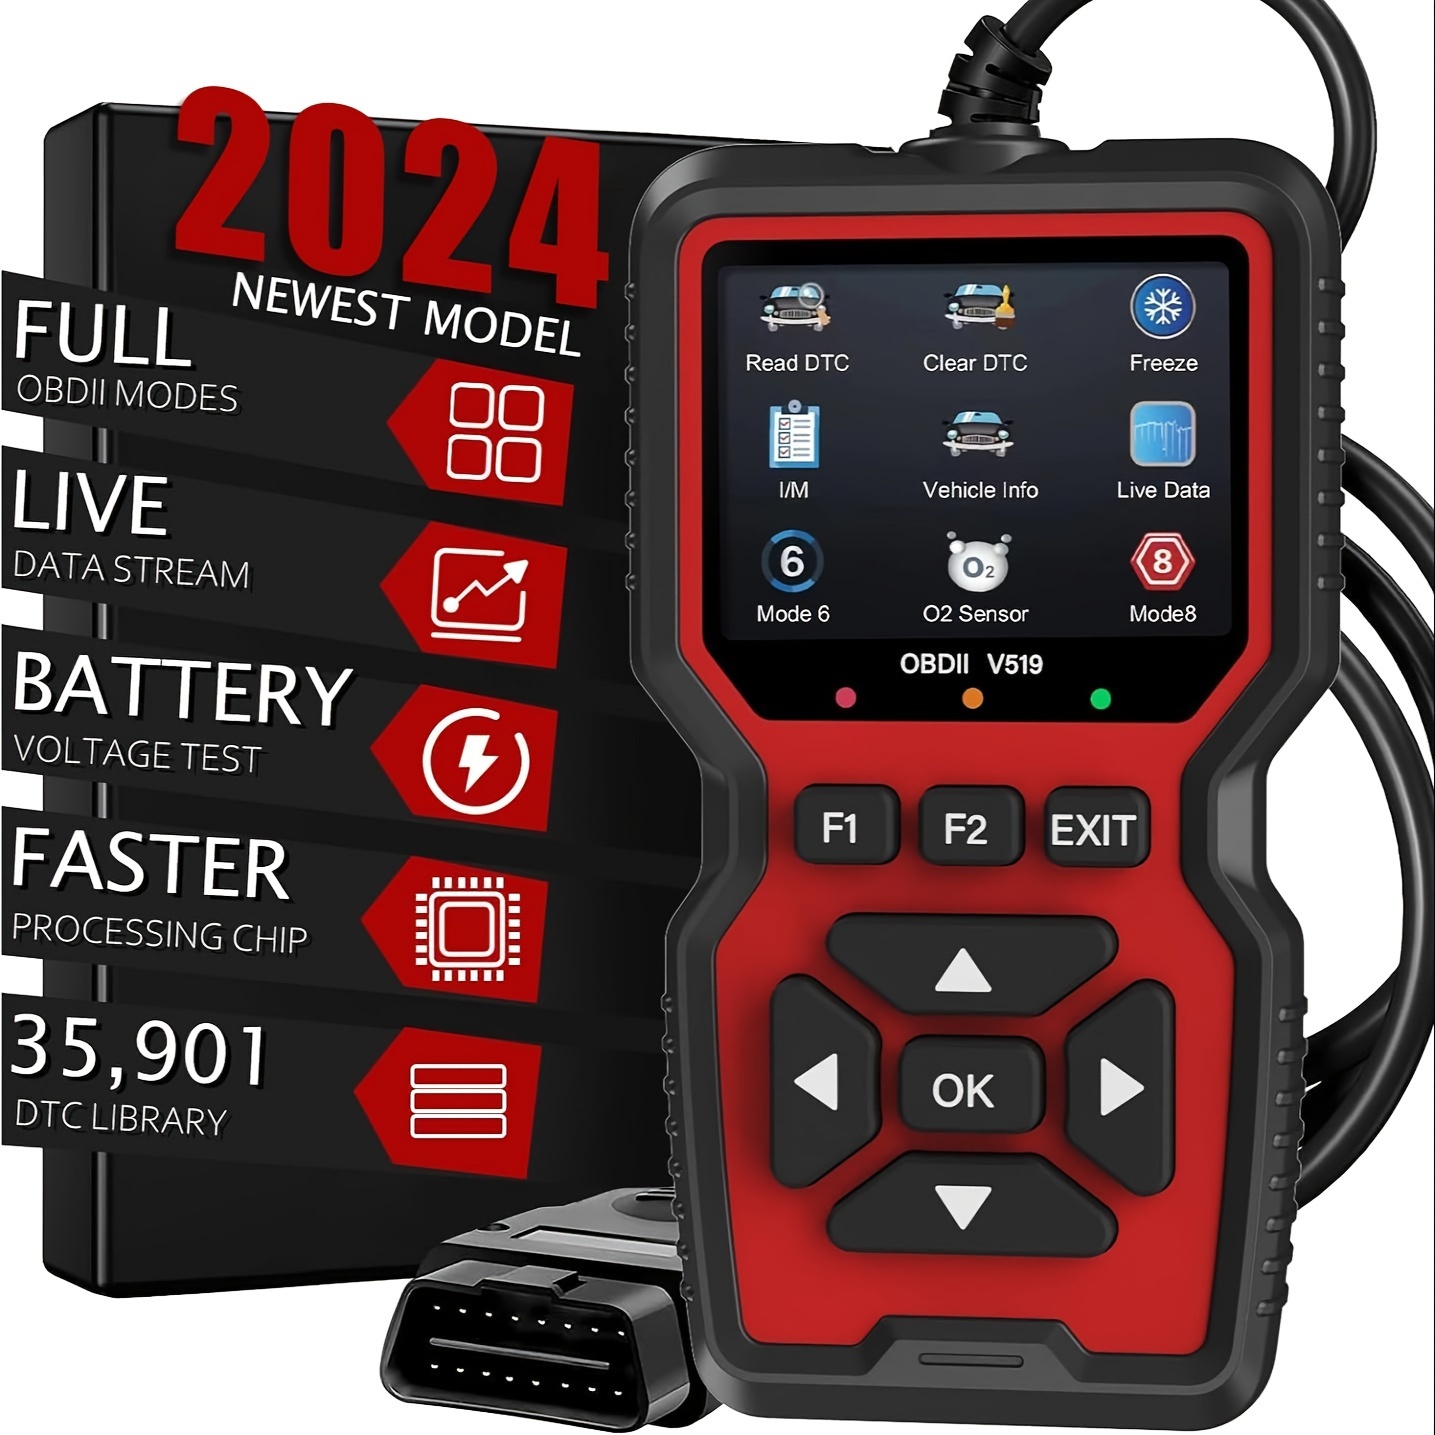 

2024 Newest V519 Obd2 Scanner Live Data Professional Mechanic Obdii Diagnostic Code Reader Tool For Check Engine Light